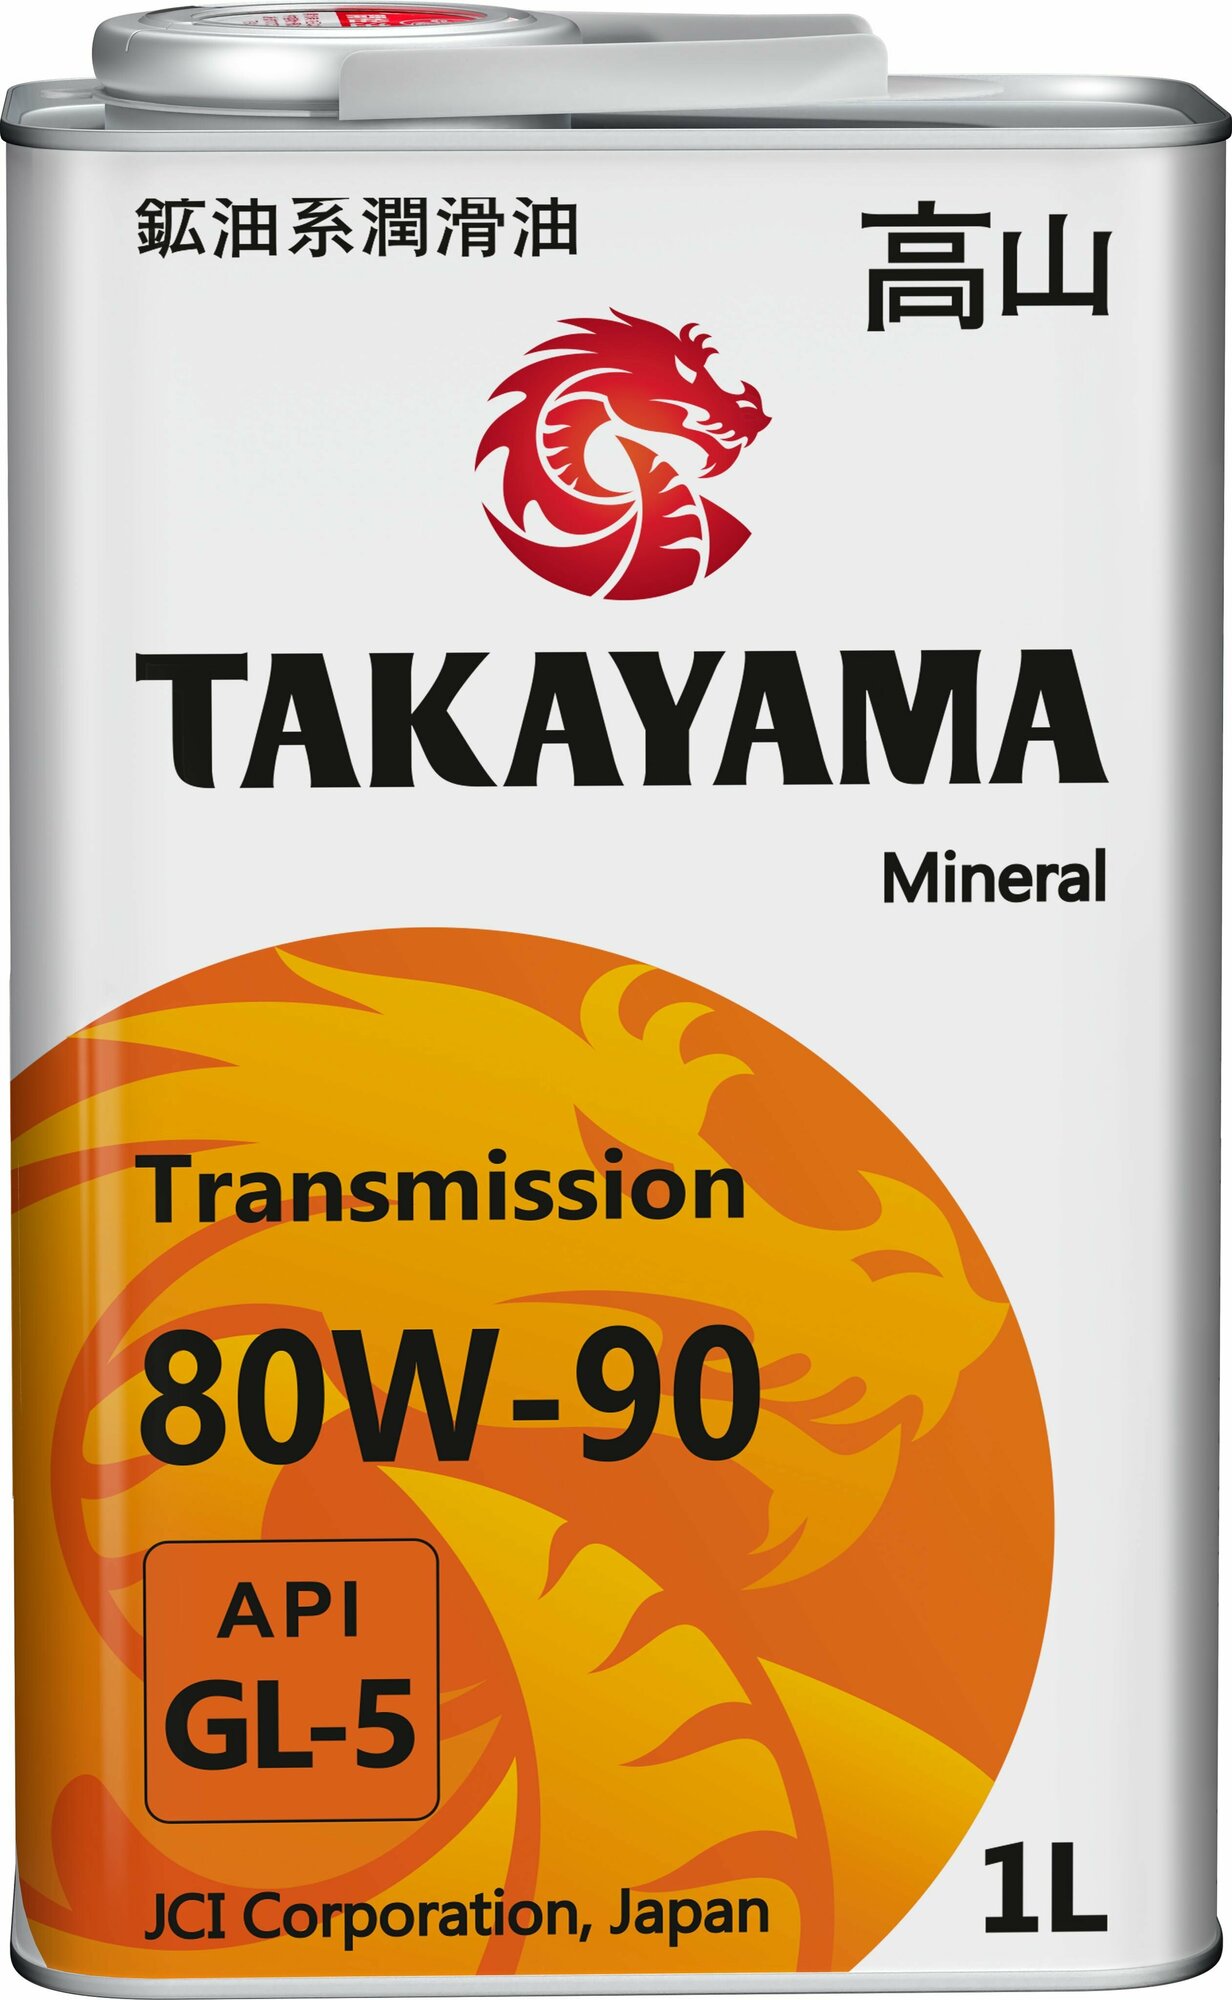 TAKAYAMA Transmission 80W-90 API GL-5 1л металл (605594/605054)